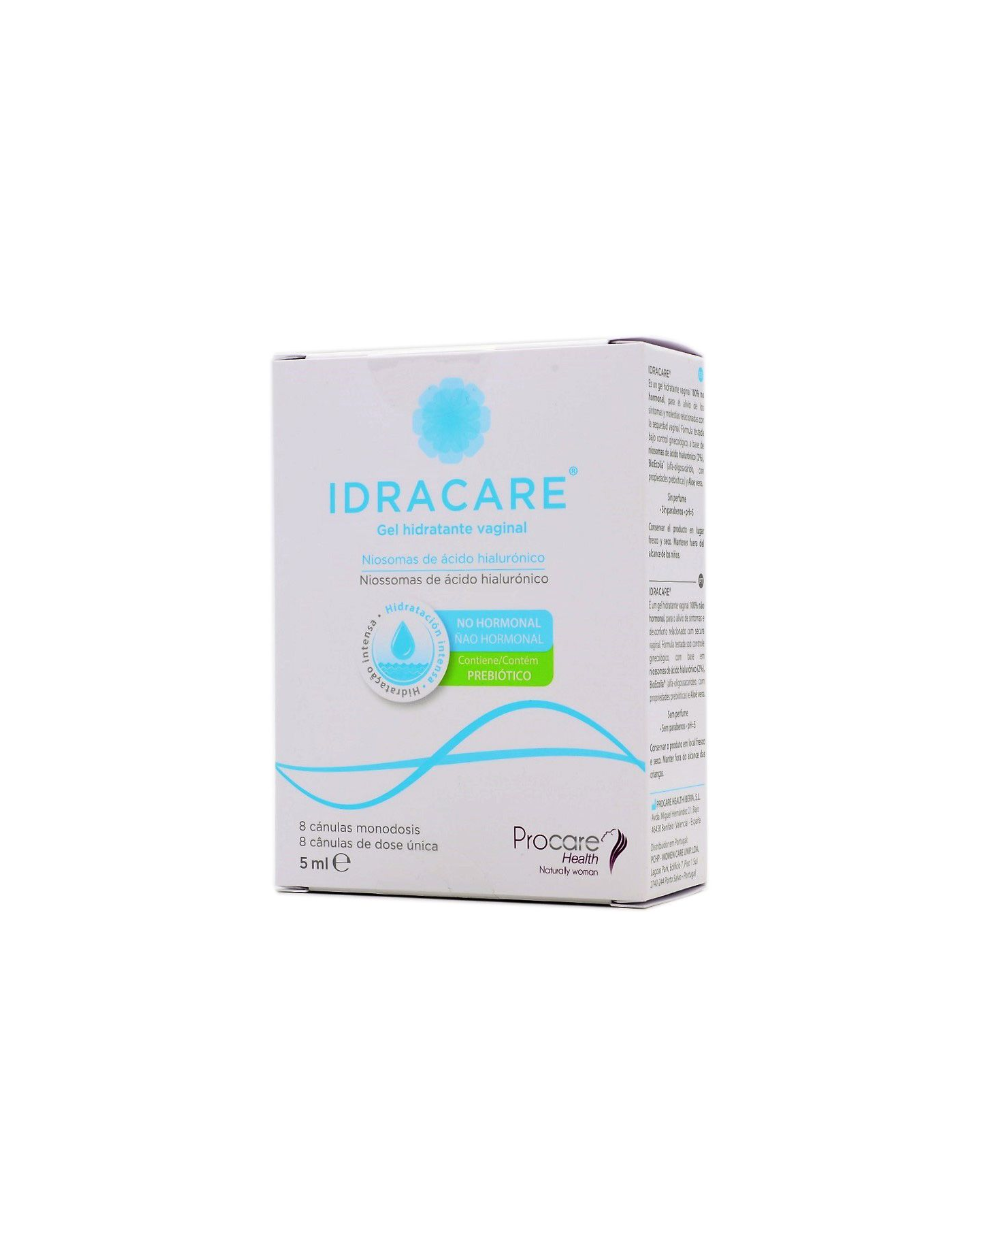 Idracare gel hidratante vaginal 8 canulas monodo